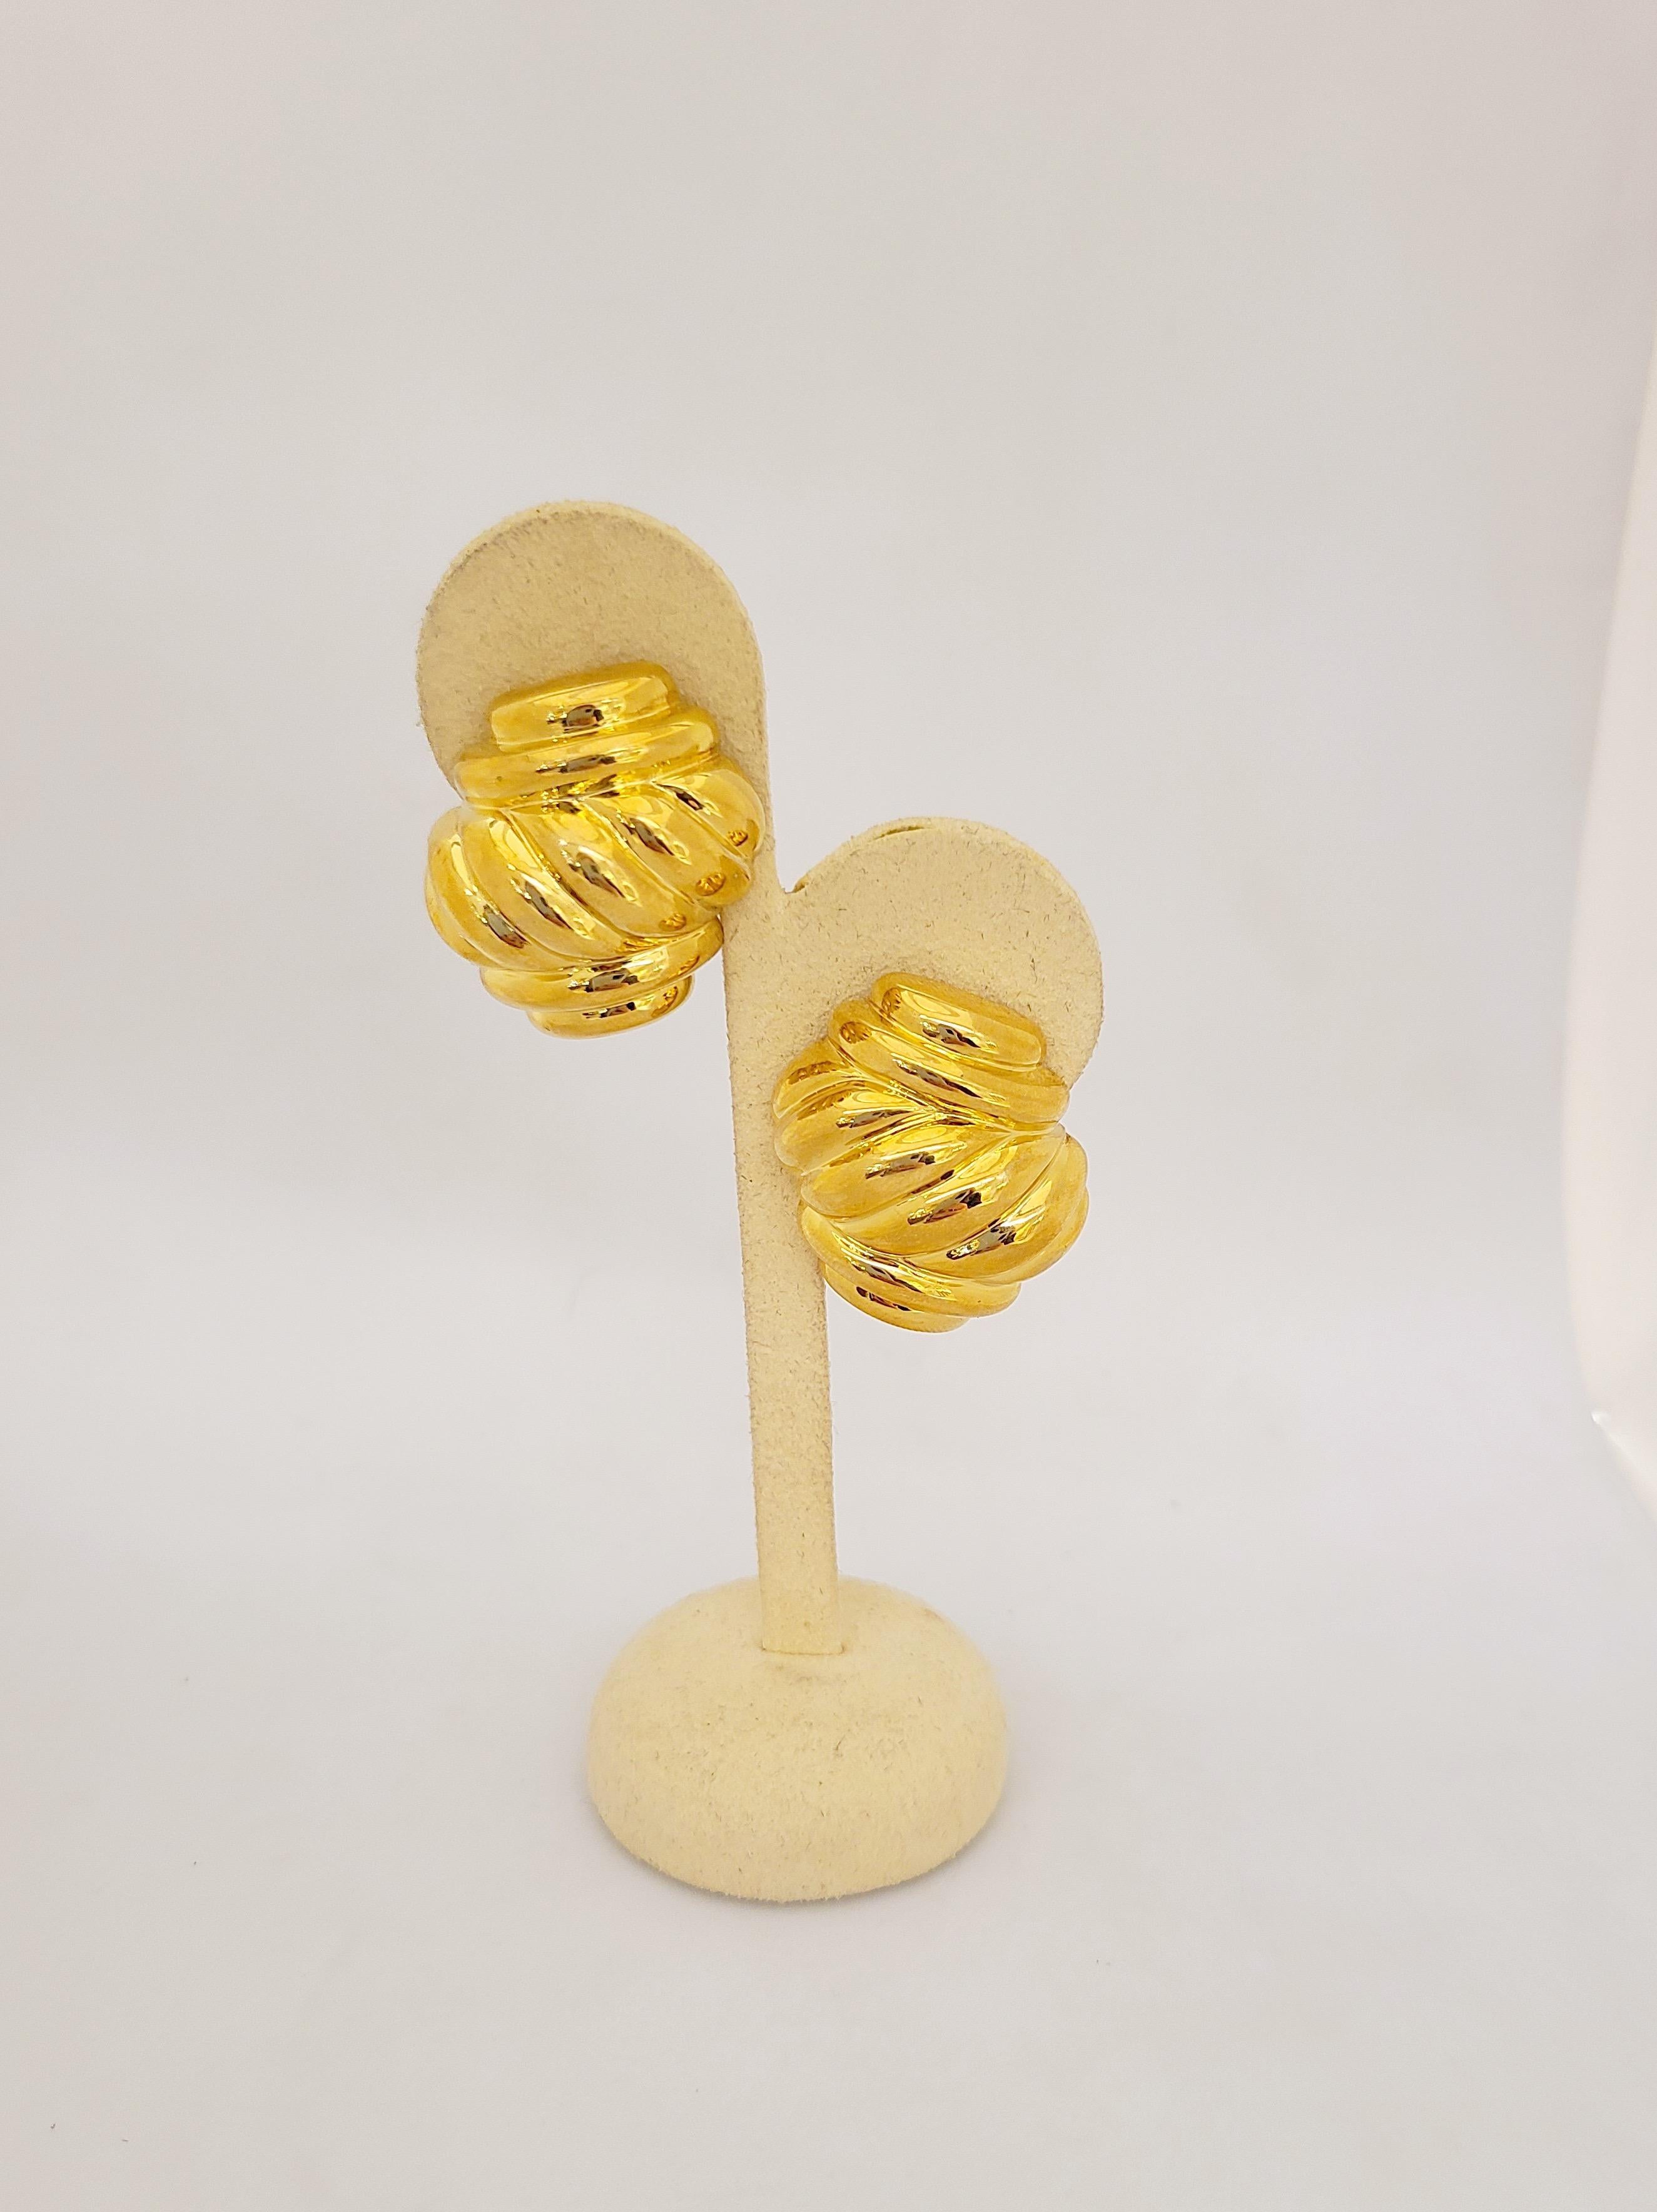 Entworfen von der legendären Charles Turi Jewelry Company. Diese klassischen Ohrringe aus 18 Karat Gelbgold sind mit einem hochglanzpolierten Gelbgold-Twistmotiv versehen. Die Ohrringe sind mit einem französischen Clip durchbohrt und können zum